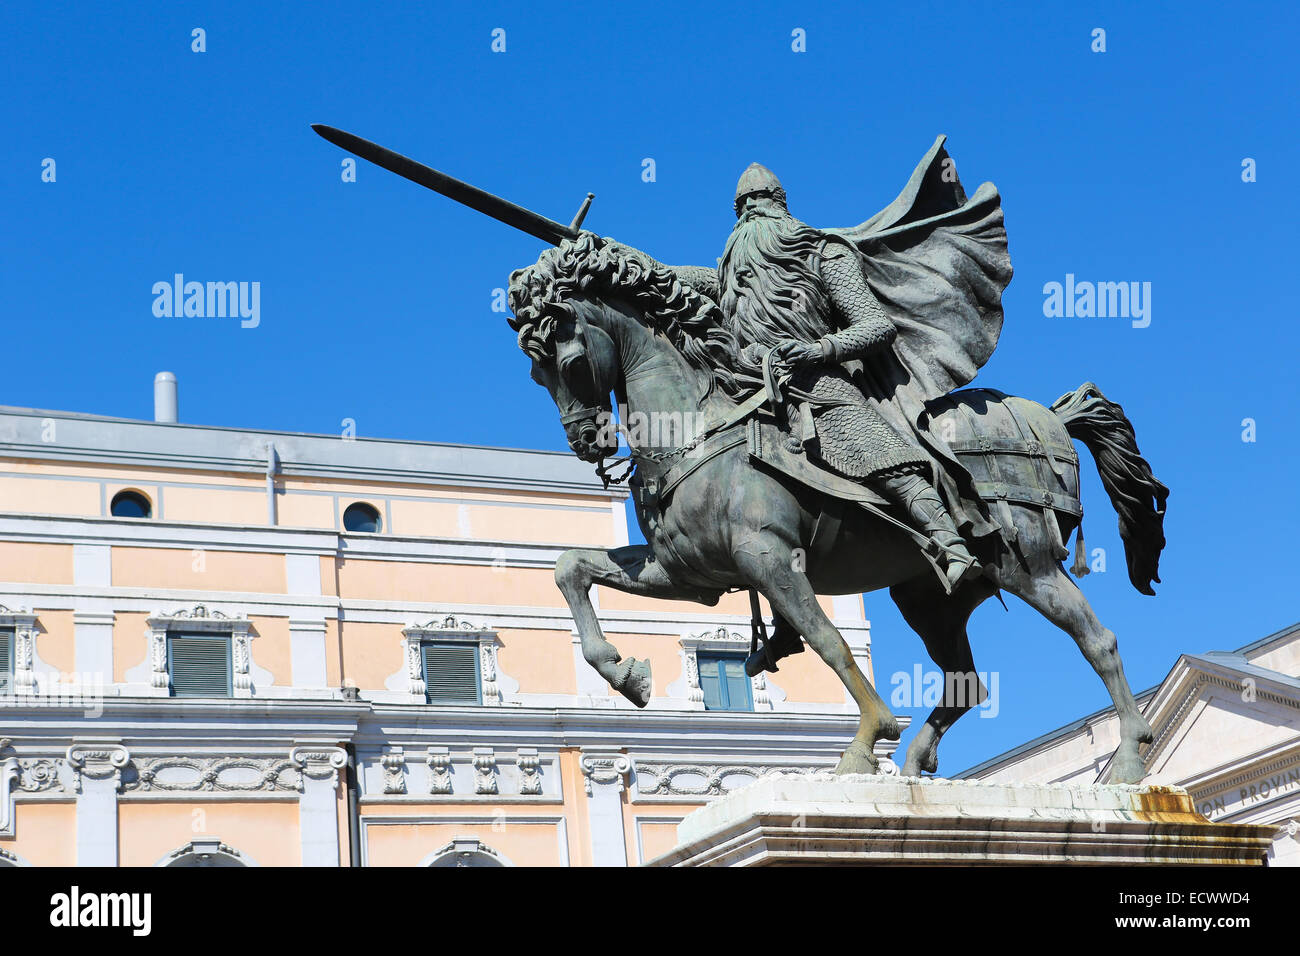 Berühmte Reiterstatue von El Cid in Burgos, Kastilien, Spanien  Stockfotografie - Alamy